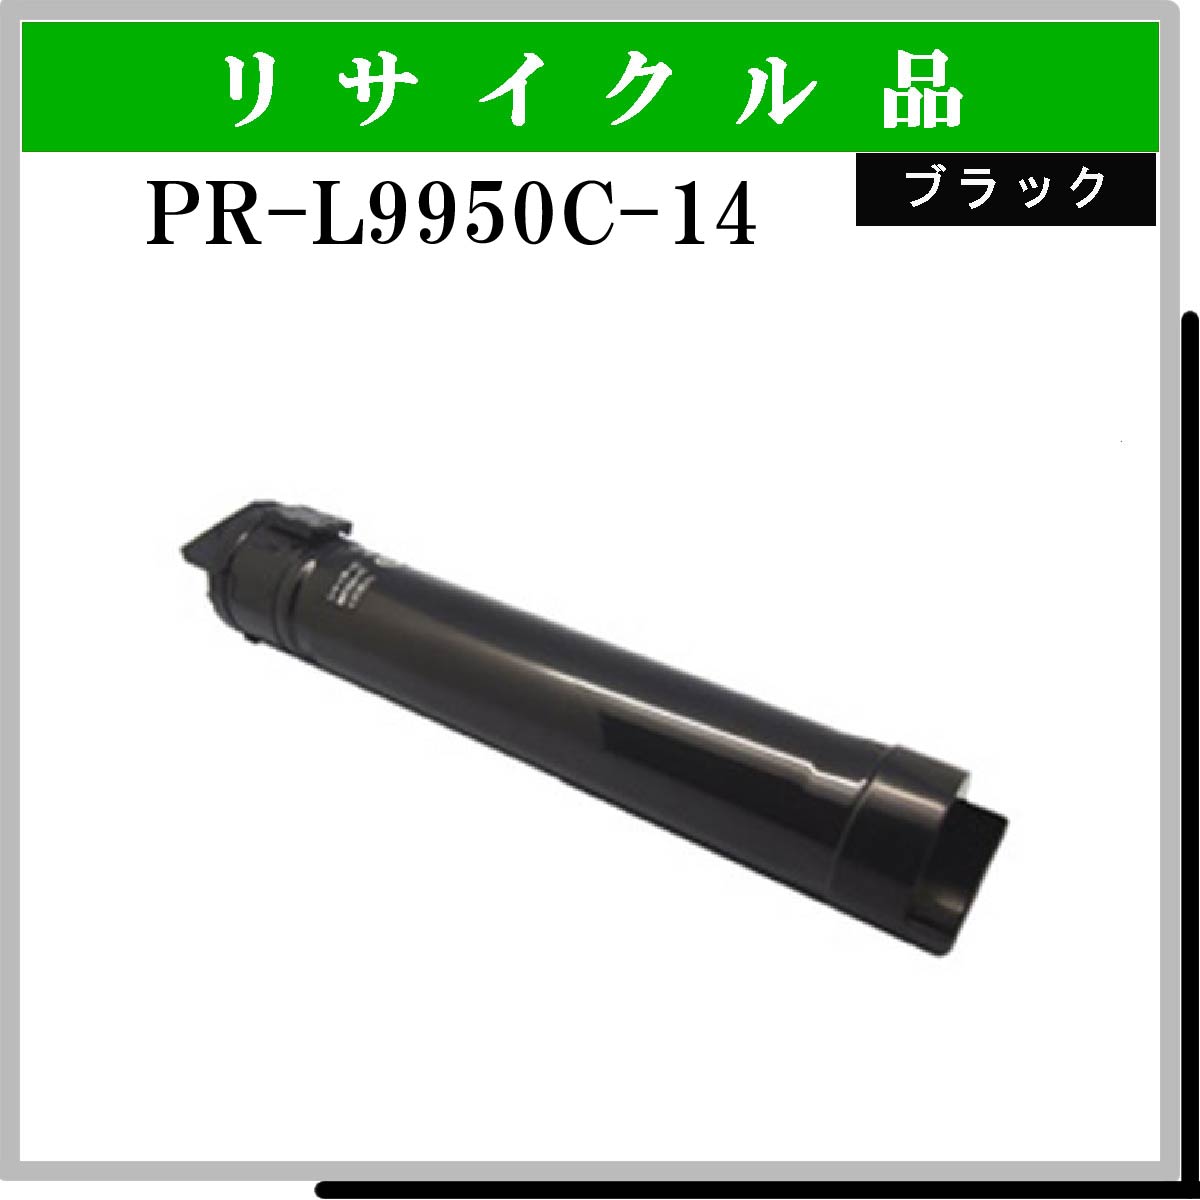 PR-L9950C-14